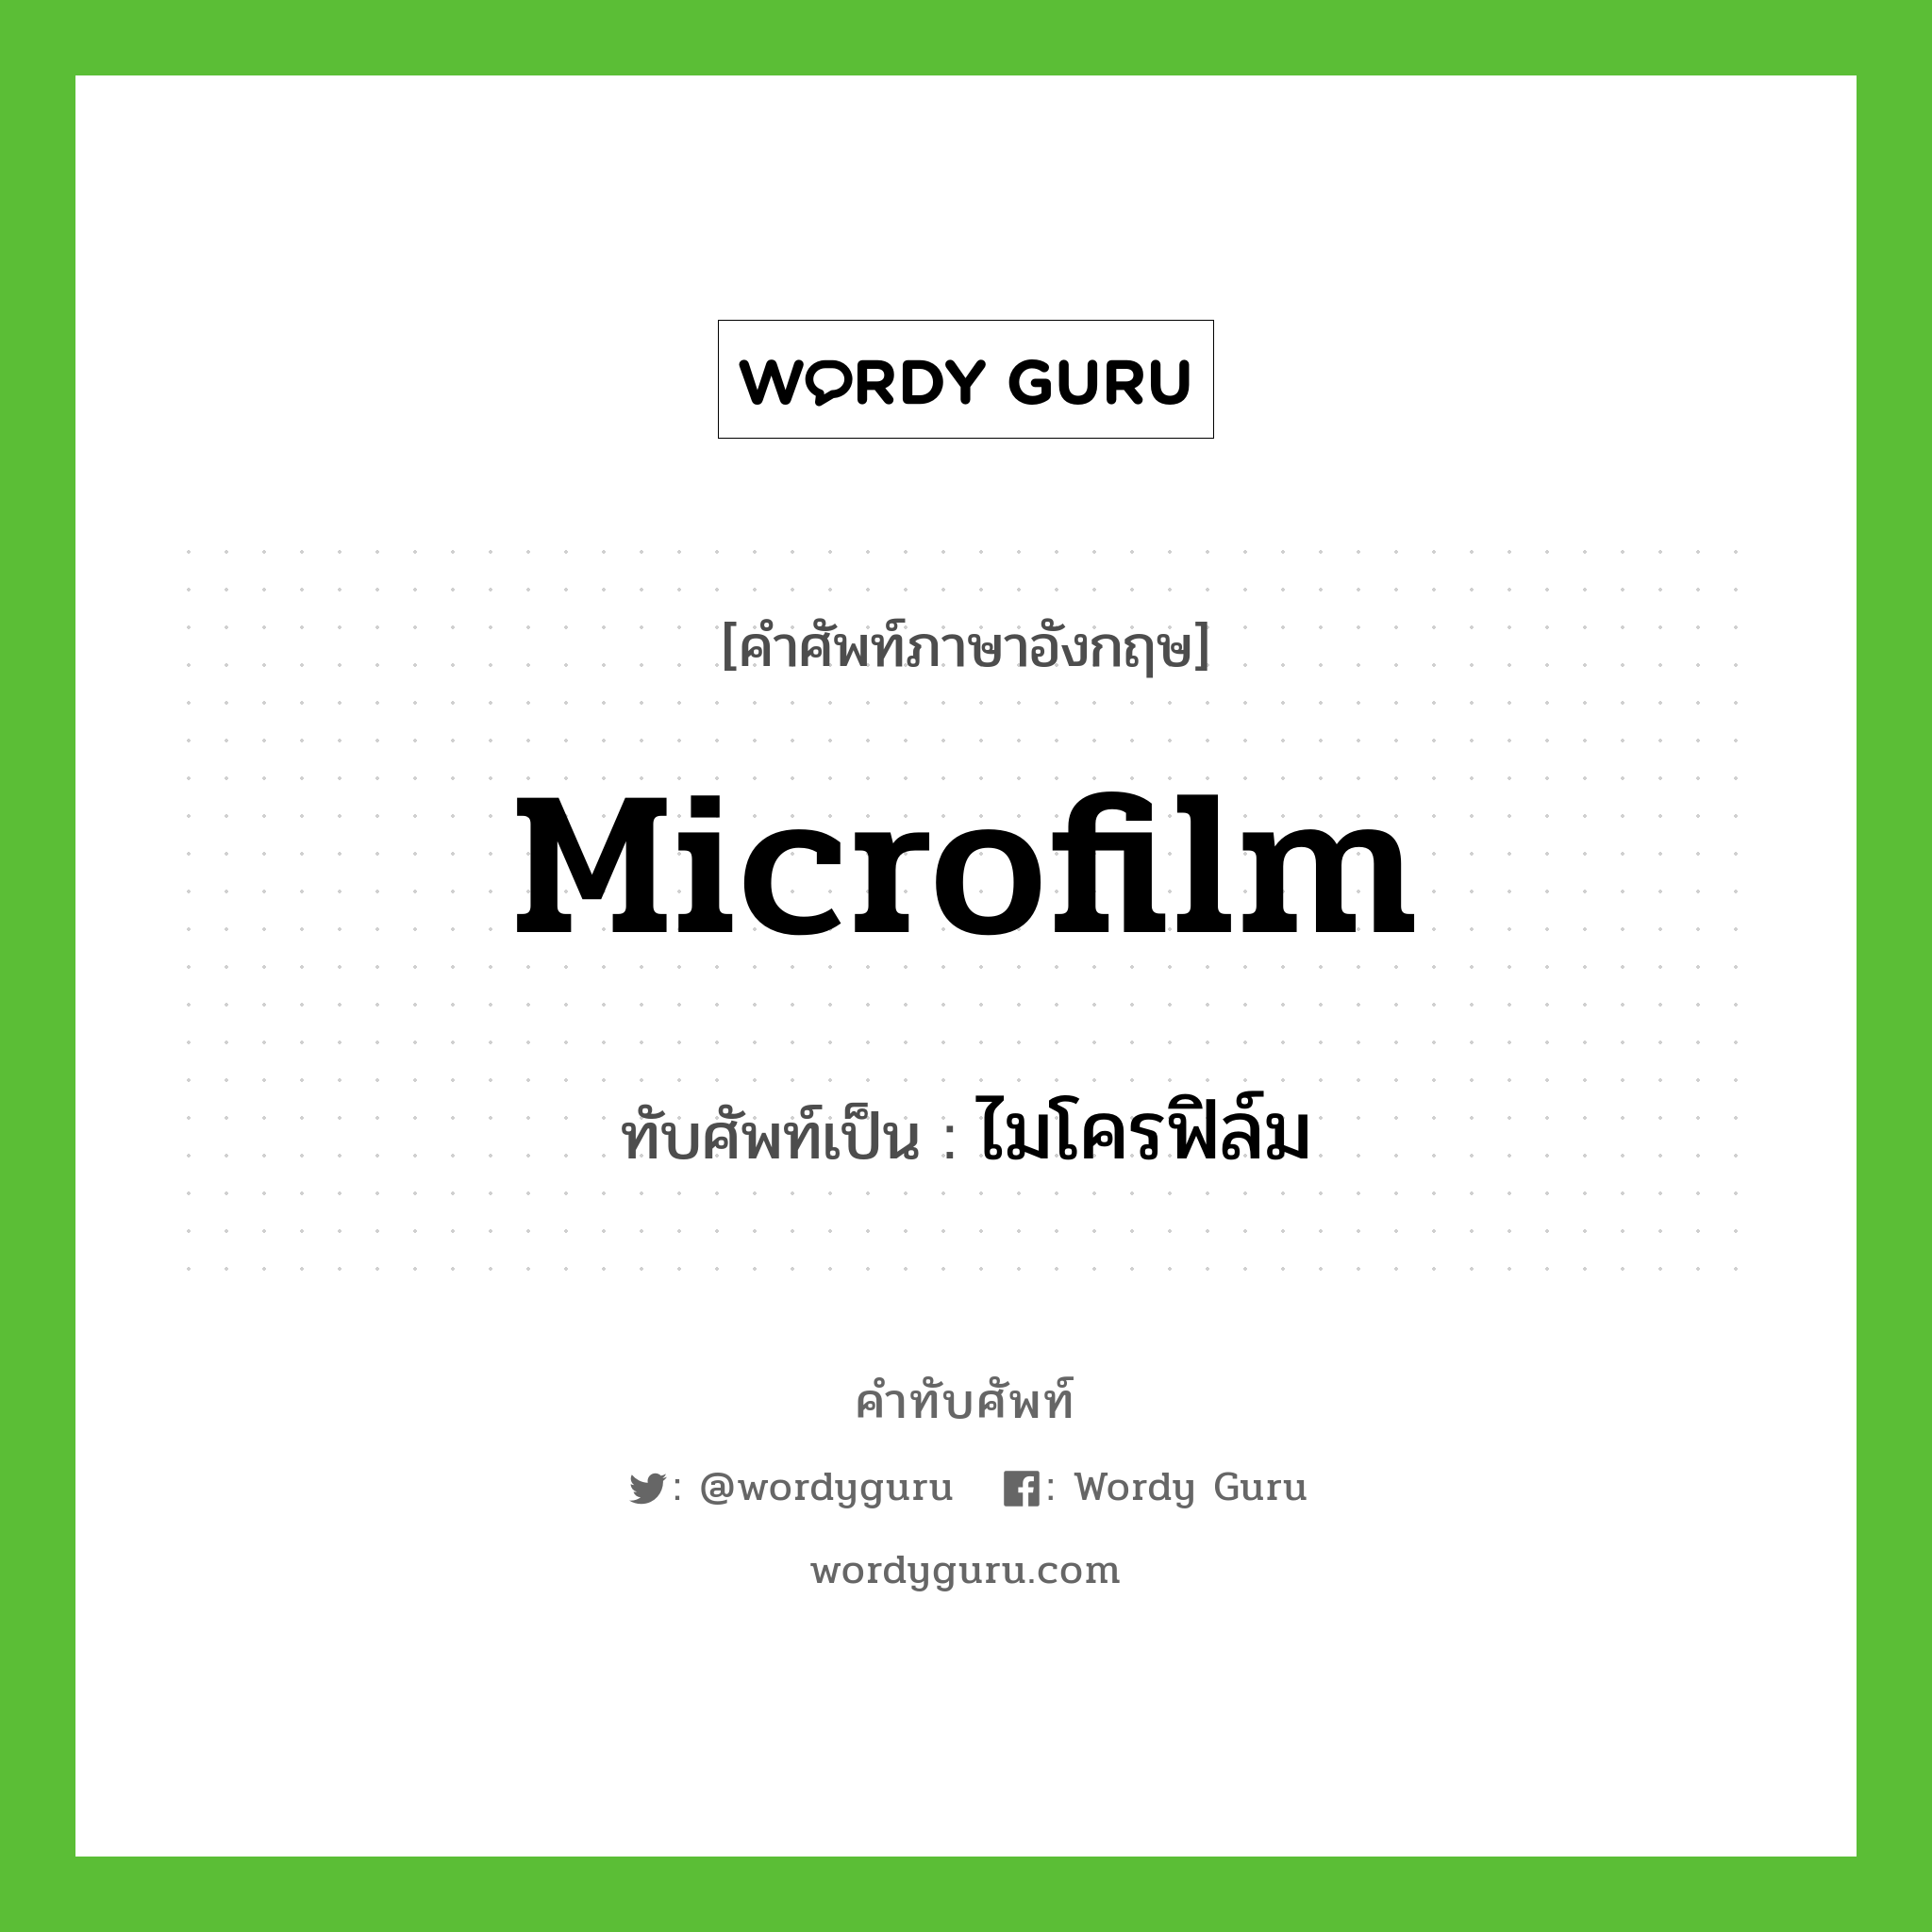 ไมโครฟิล์ม เขียนอย่างไร?, คำศัพท์ภาษาอังกฤษ ไมโครฟิล์ม ทับศัพท์เป็น microfilm